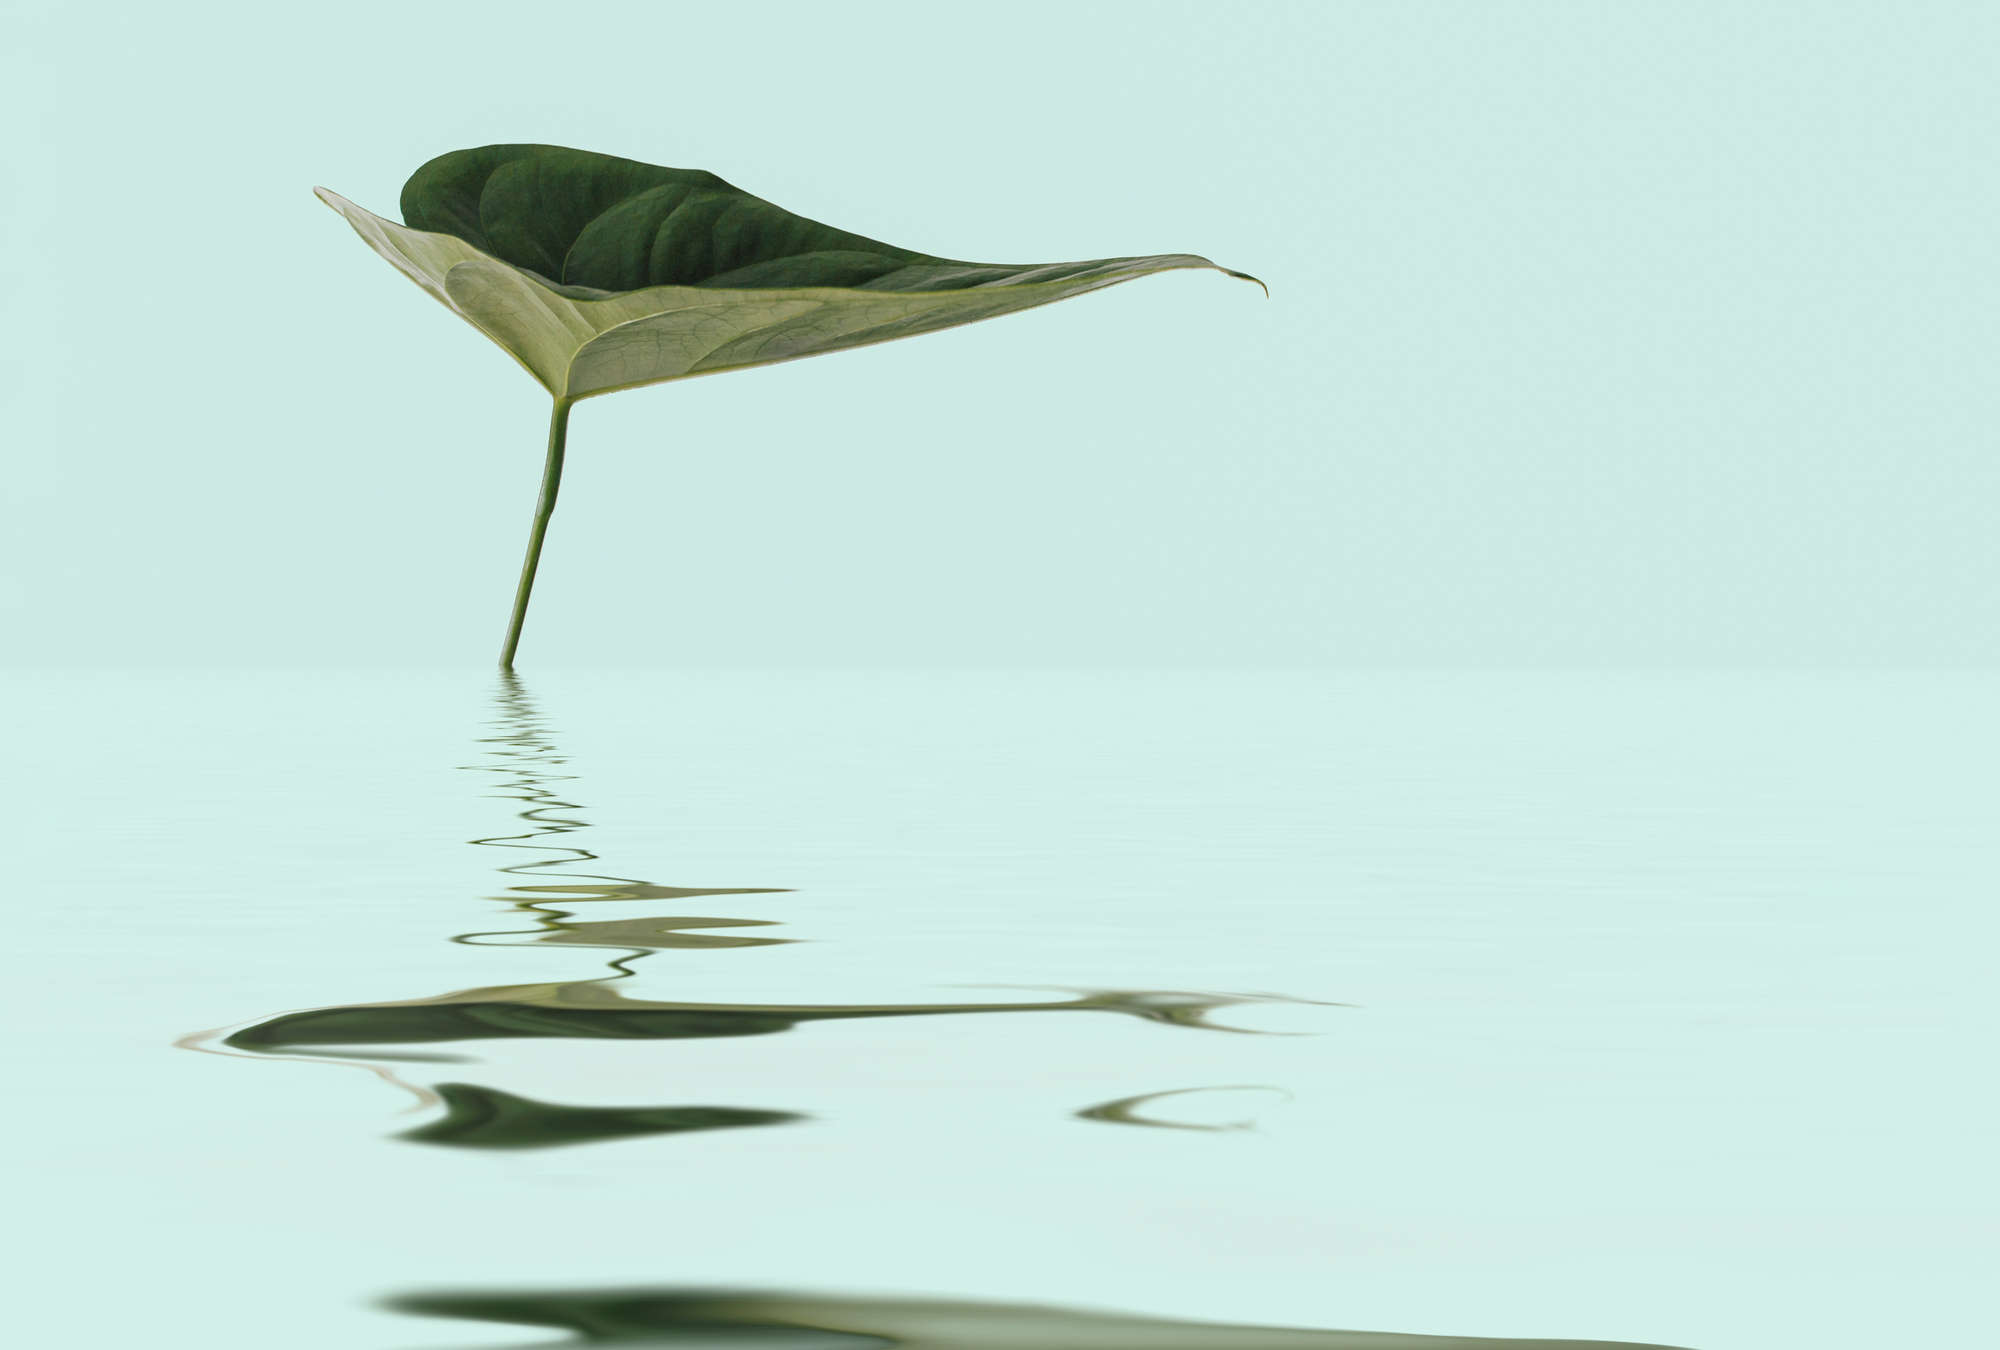             Zen Behang met Blad in Water voor Wellness Ontwerp
        